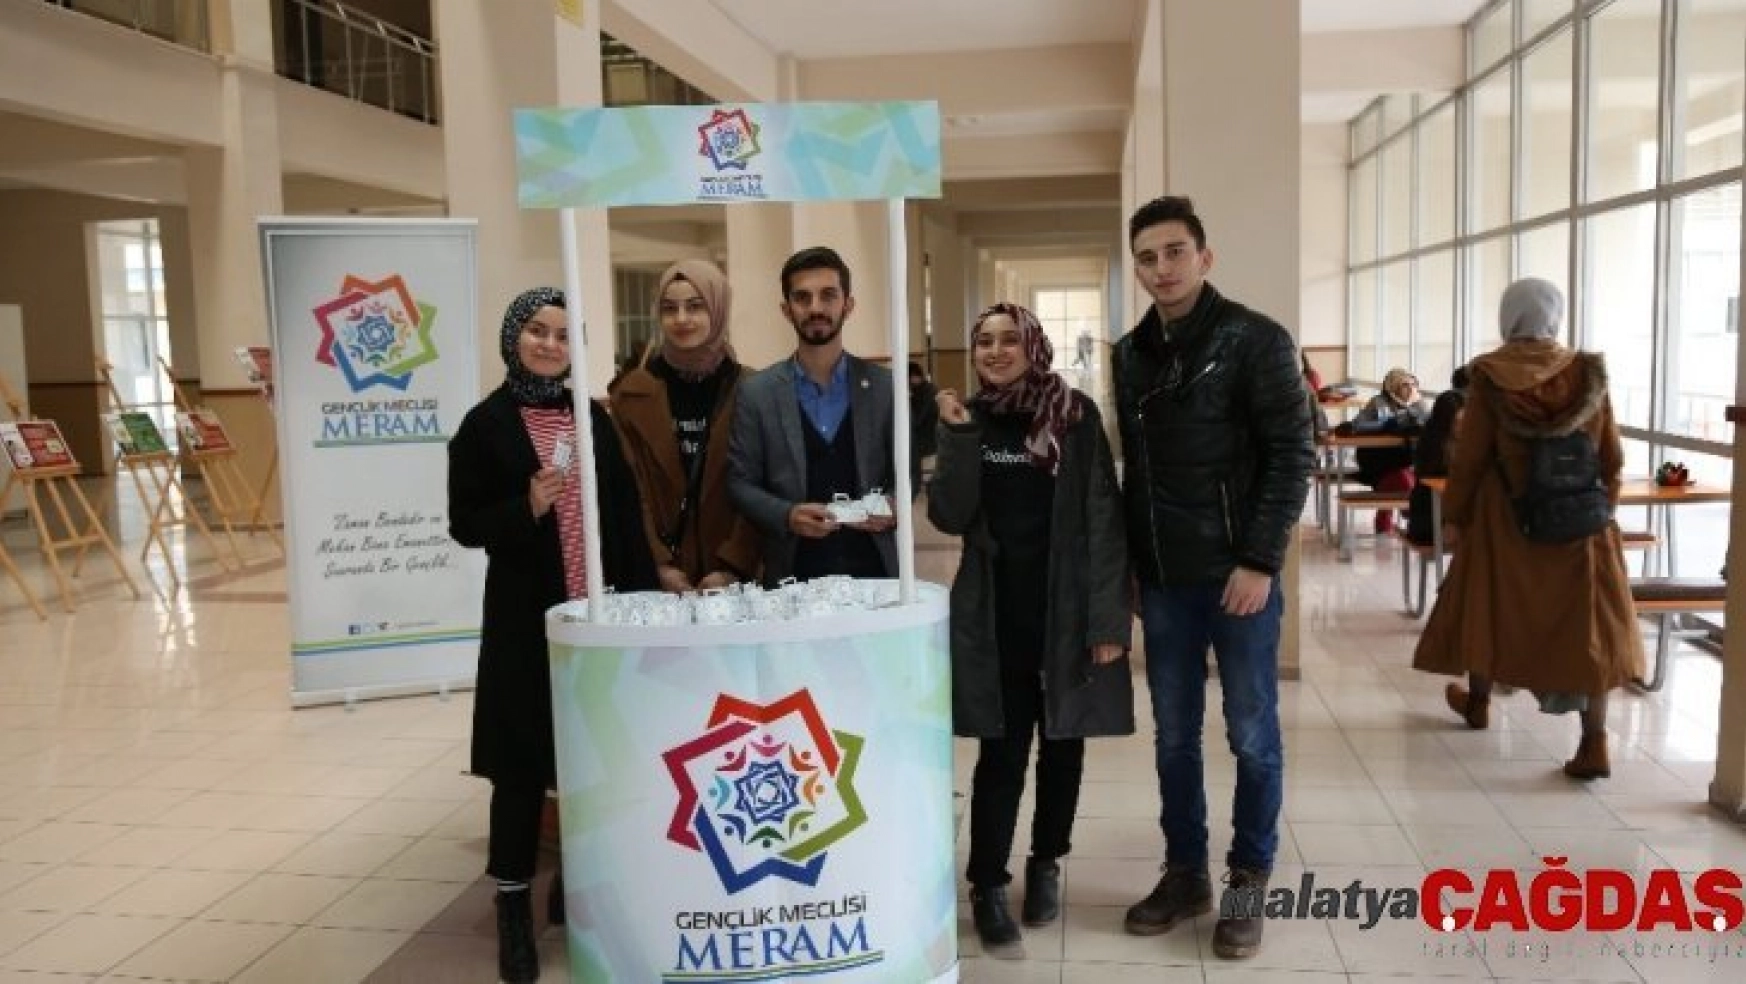 Meram Belediyesi Gençlik Meclisinden Yerli Malı Haftası etkinliği